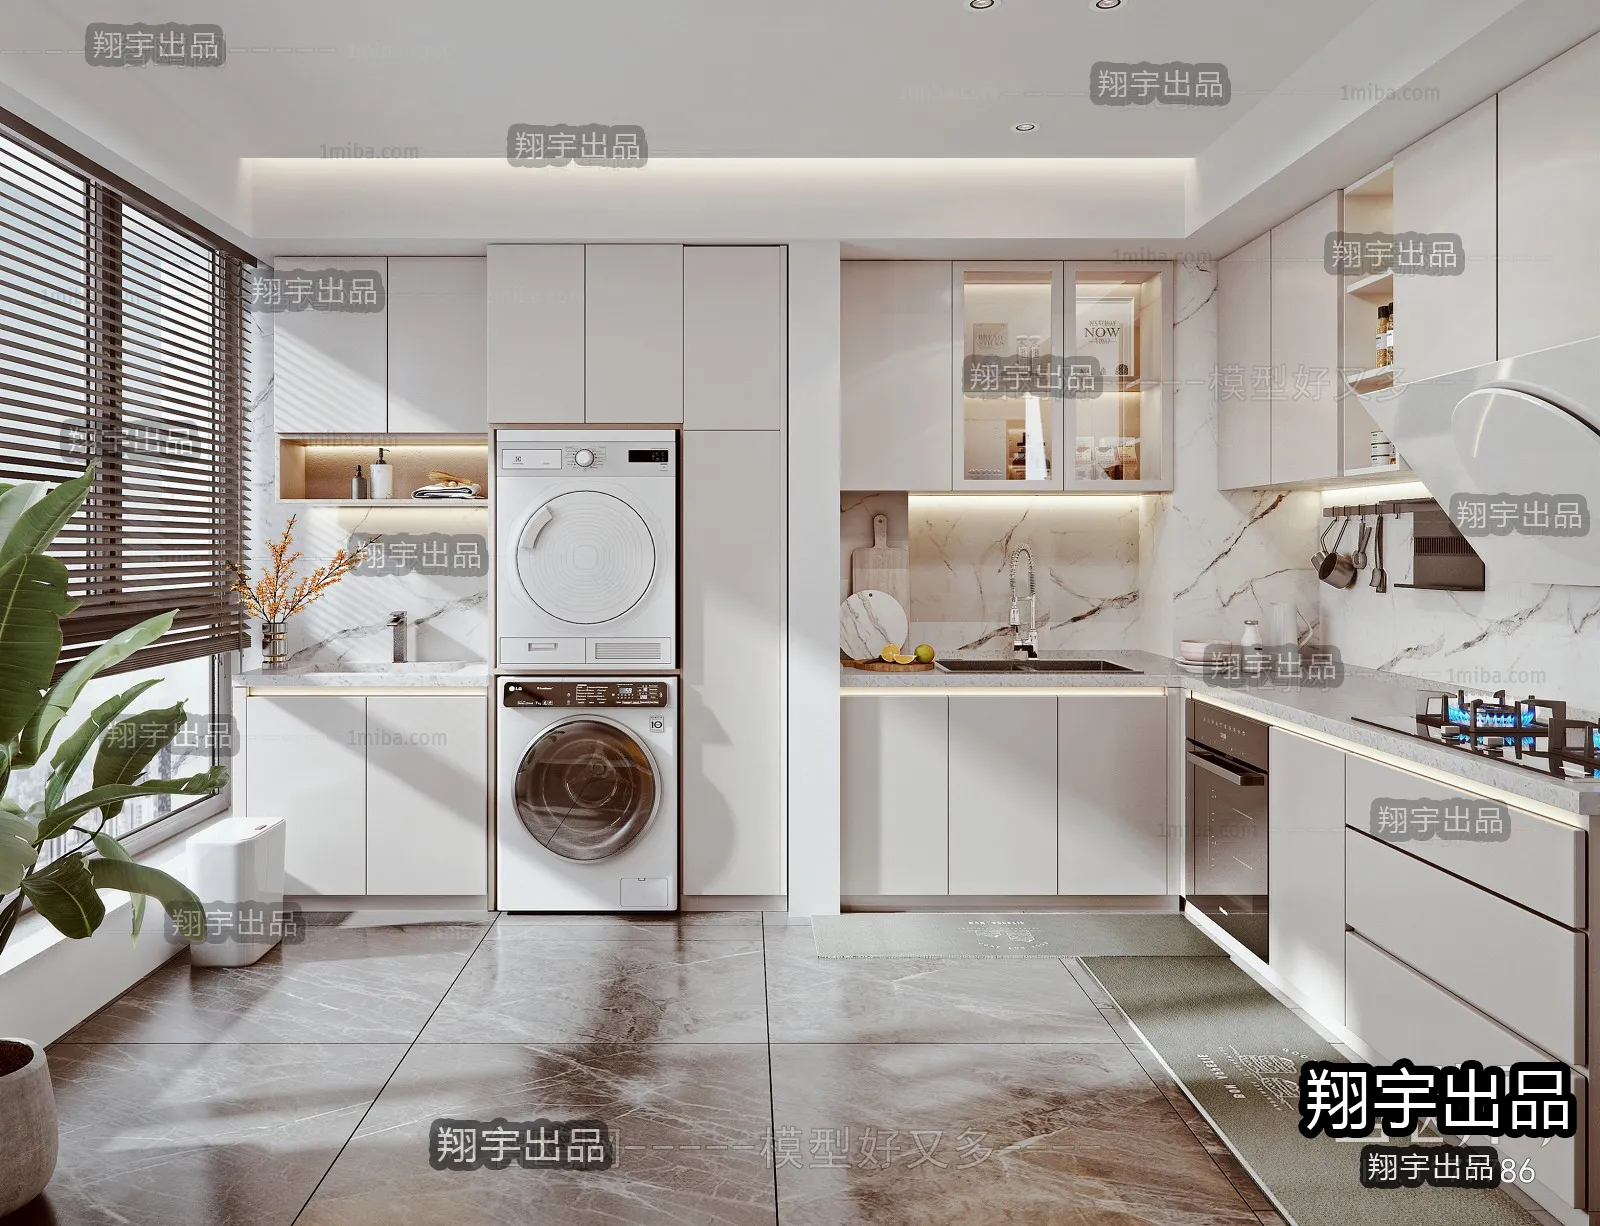 Kitchen – Modern Interior Design – 3D Models – 027